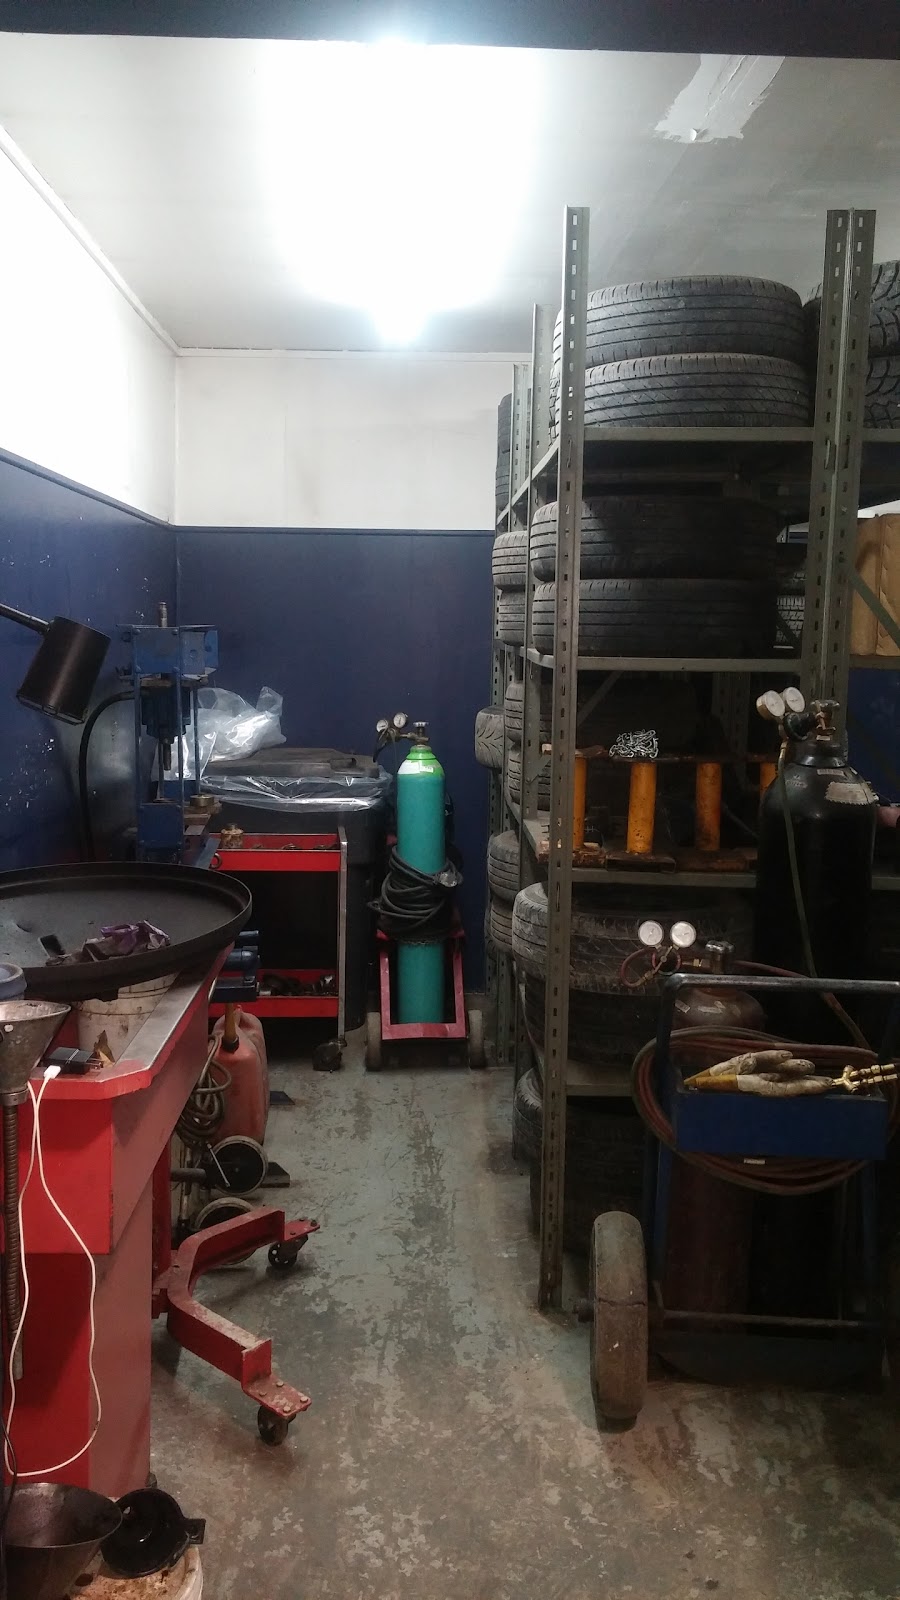 Garage R. Gomez inc. | car repair | 1221 Boulevard Queen-Victoria, Sherbrooke, QC J1J 4N6, Canada | 8198239847 OR +1 819-823-9847